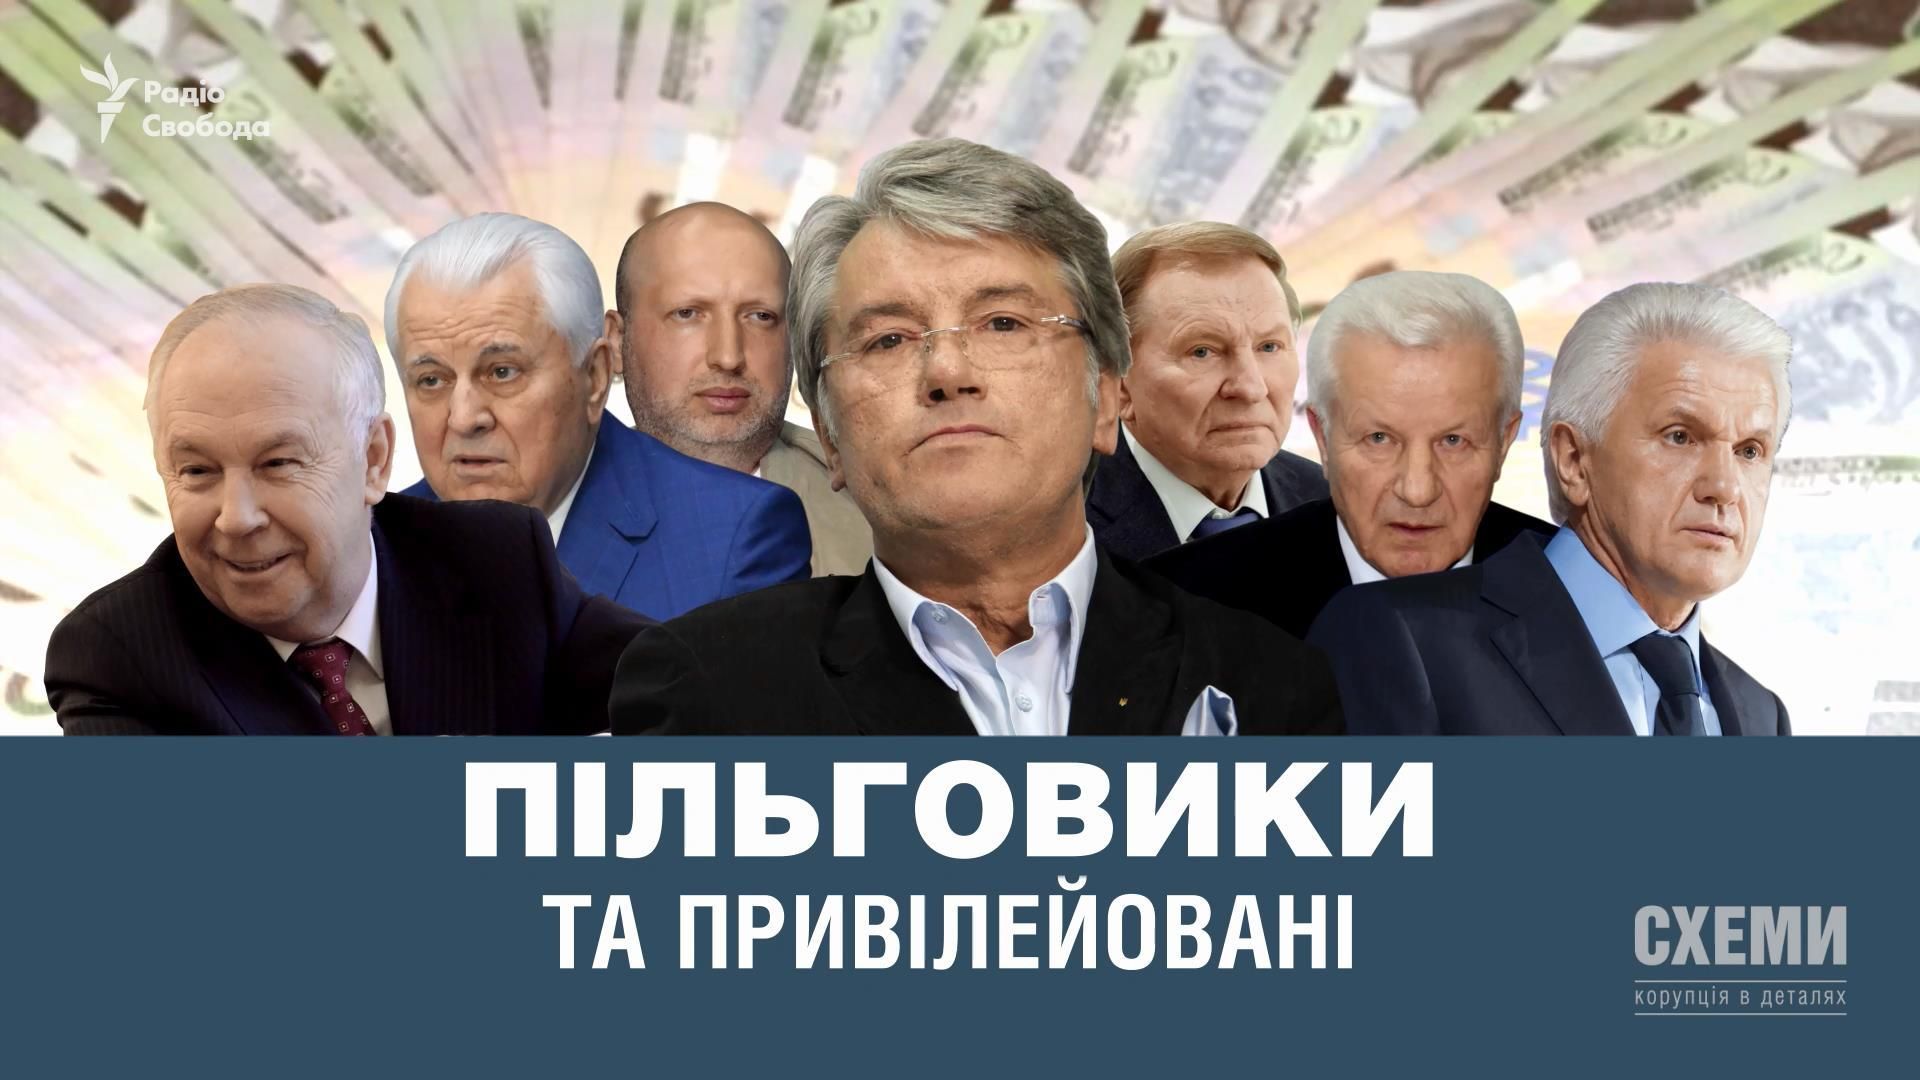 Элитные льготники: как живут бывшие высокопоставленные чиновники за счет обычных украинцев